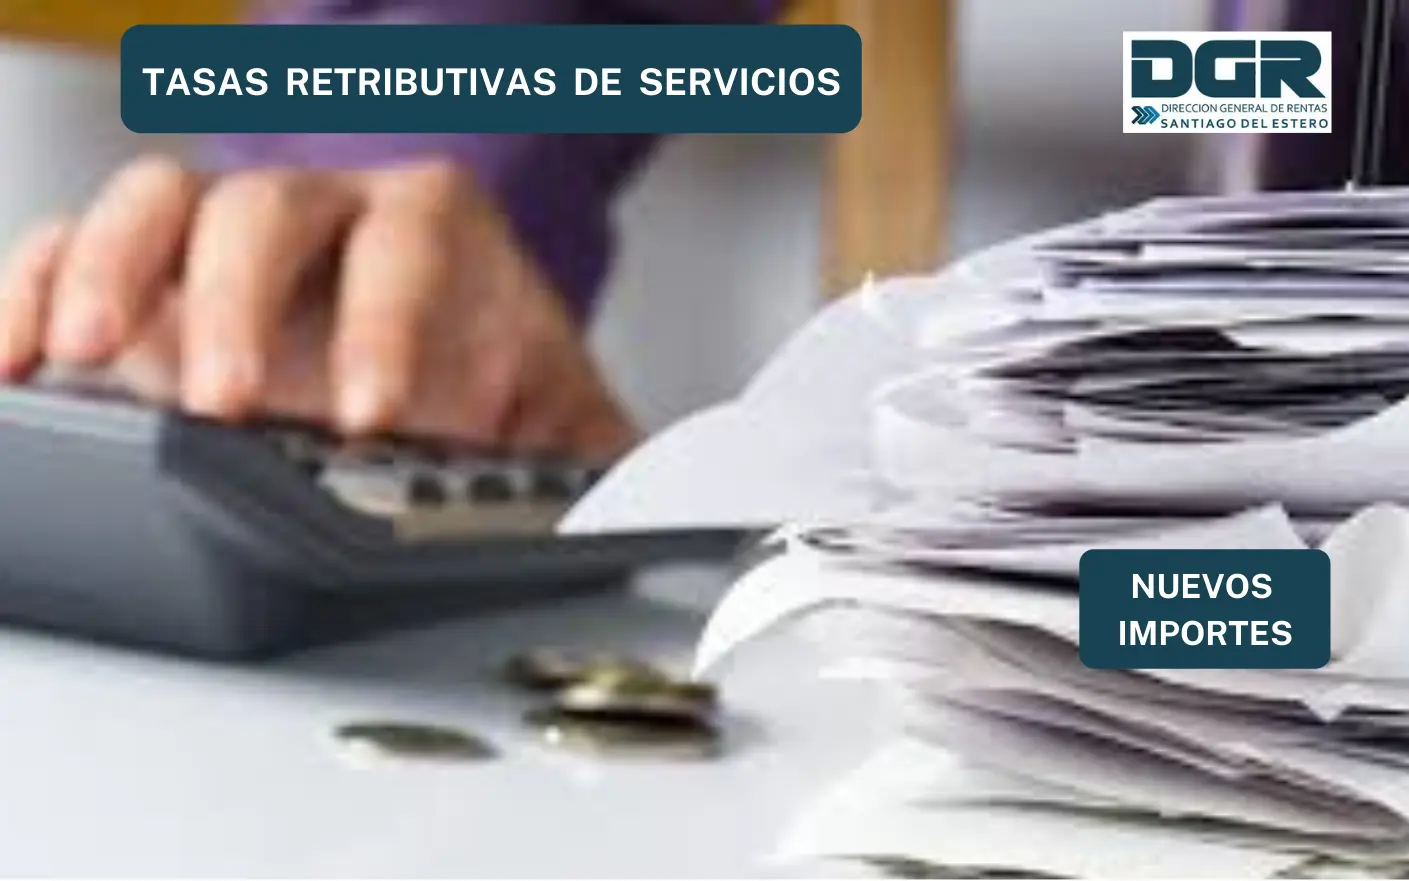 dgr fiscalizacion telefono santiago del estero - Cómo saber la deuda de patente en Santiago del Estero